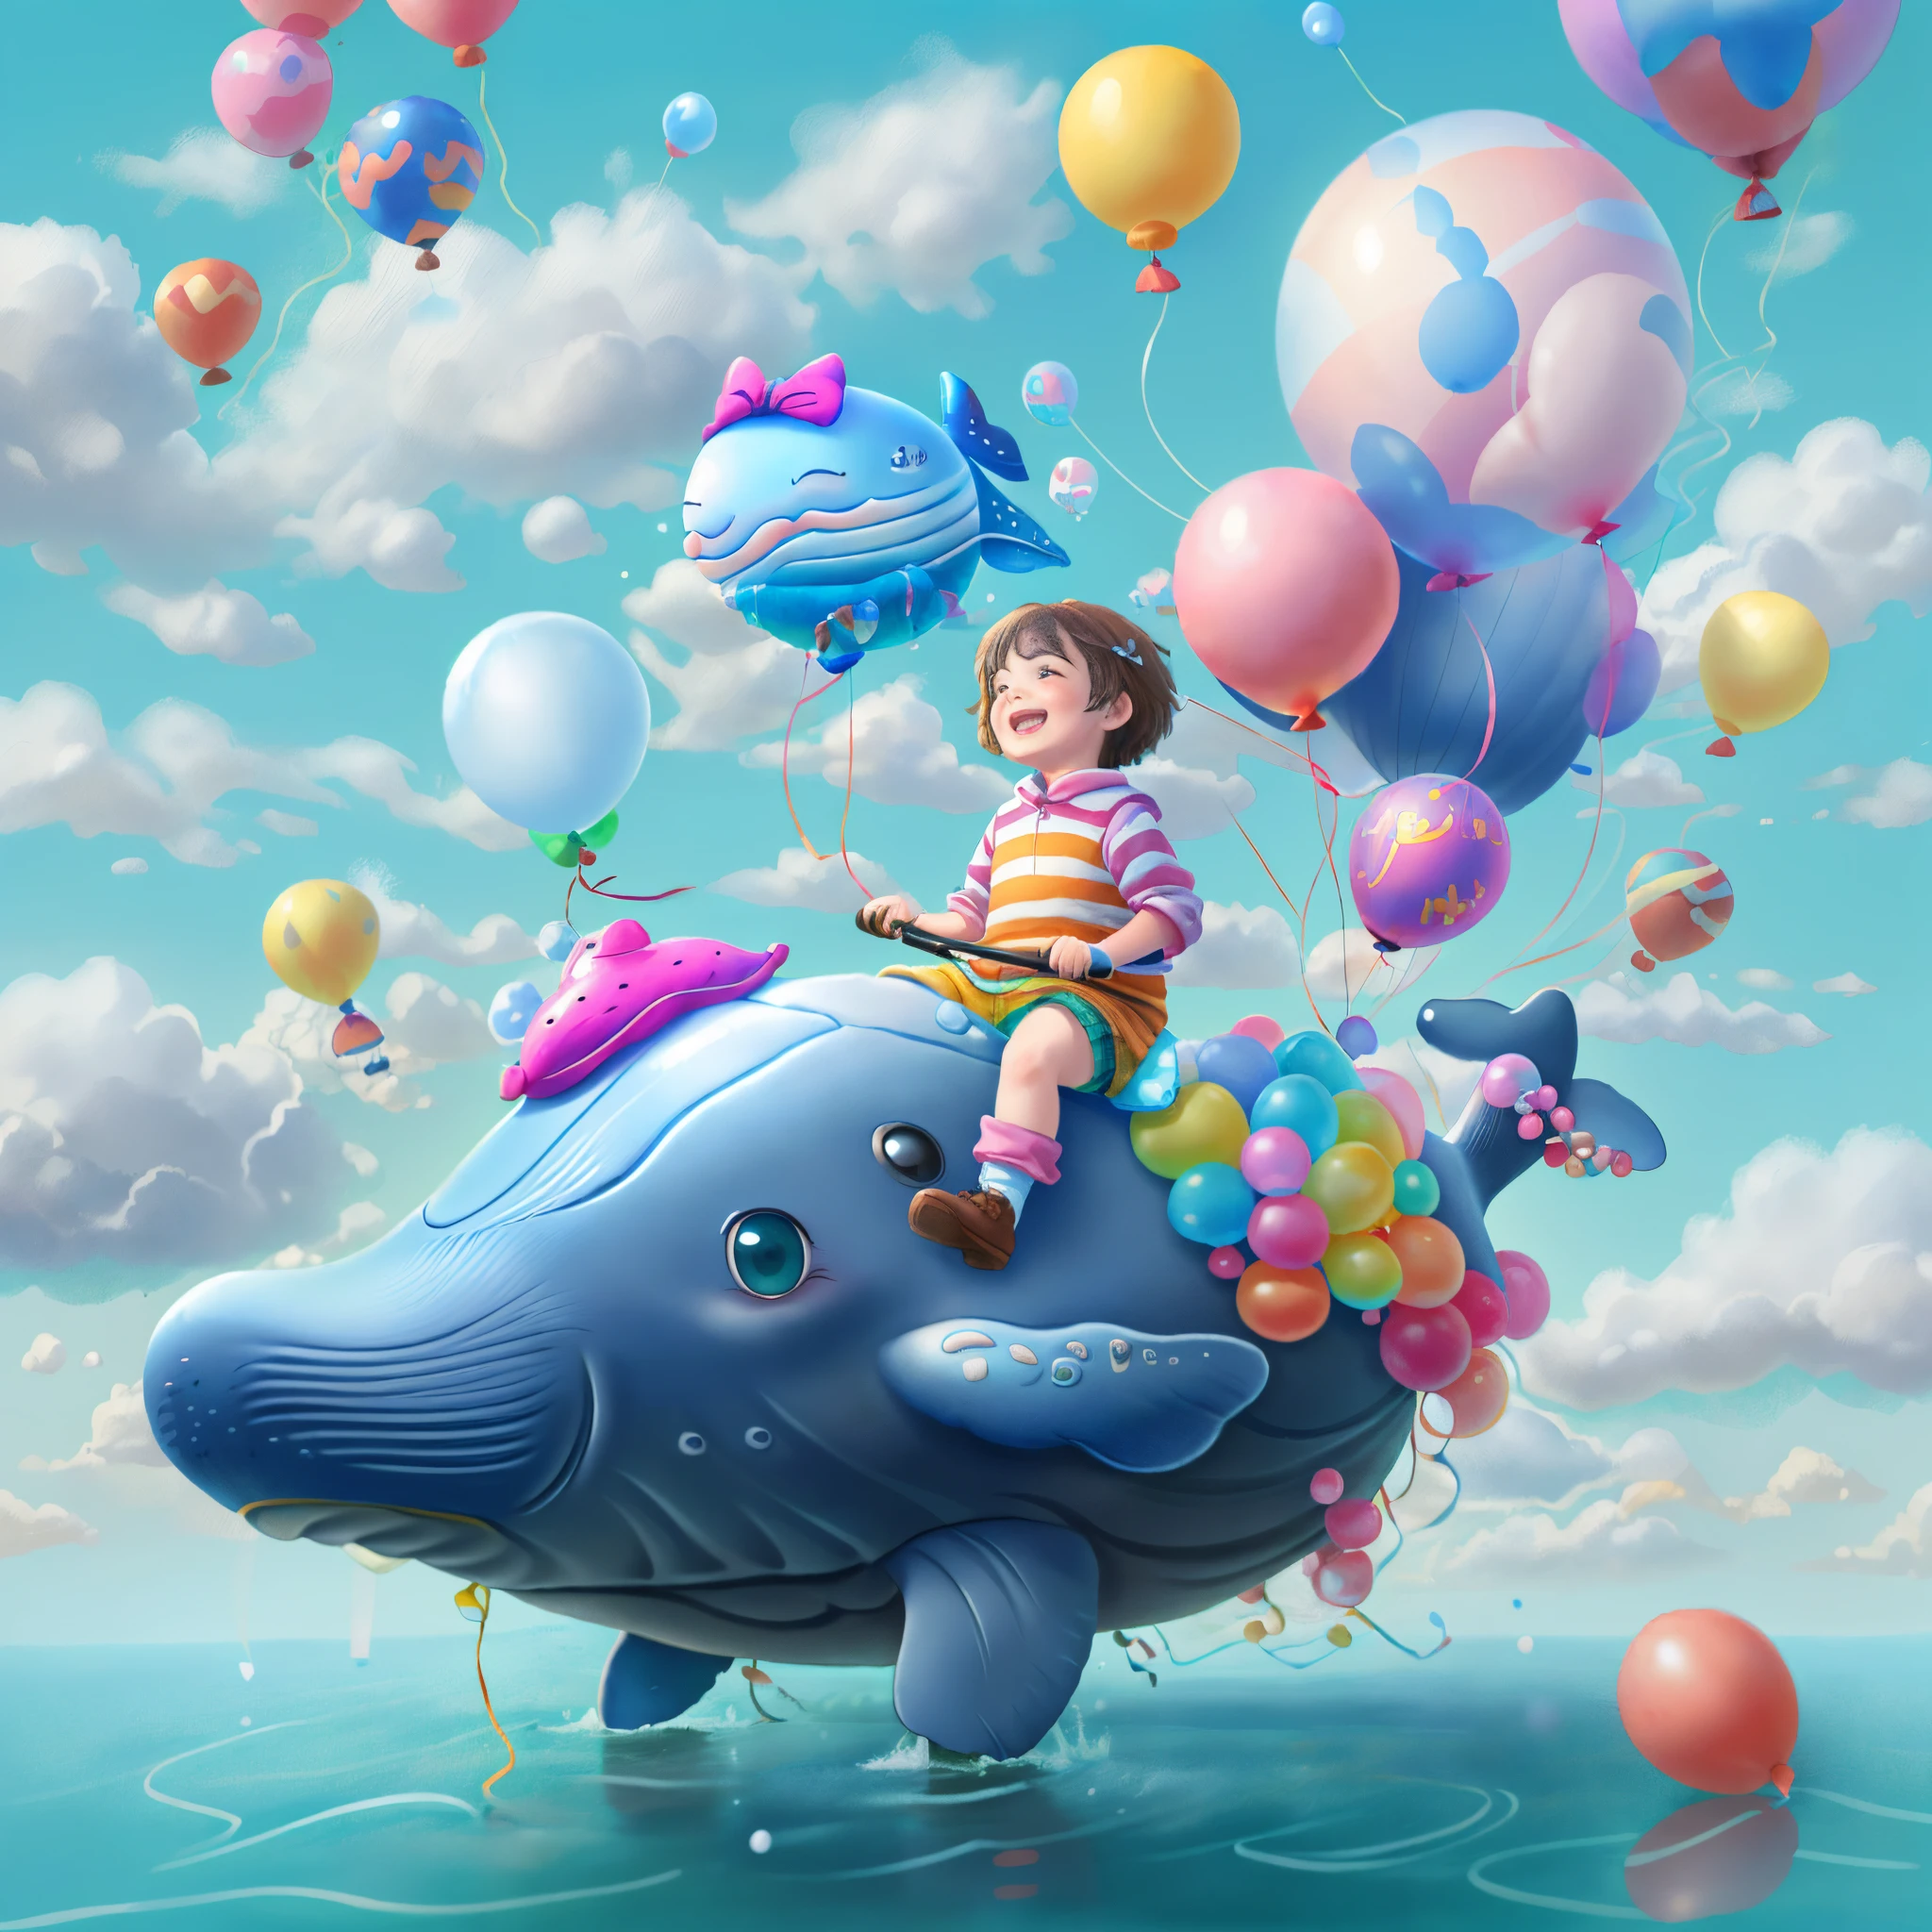 ((1  riding a whale made of надувные шарики))，Смейся счастливо，Летать в облаках，надувные шарики，с голубым небом и белыми облаками，смотрит в камеру, Симпатичное и детальное цифровое искусство, прекрасная цифровая живопись, Милый воздушный кит, Прекрасная детальная работа, милый 3D-рендеринг, цифровая живопись очень подробная, милый и красочный, восхитительный, высокодетализированное цифровое изображение, Подробный и красочный